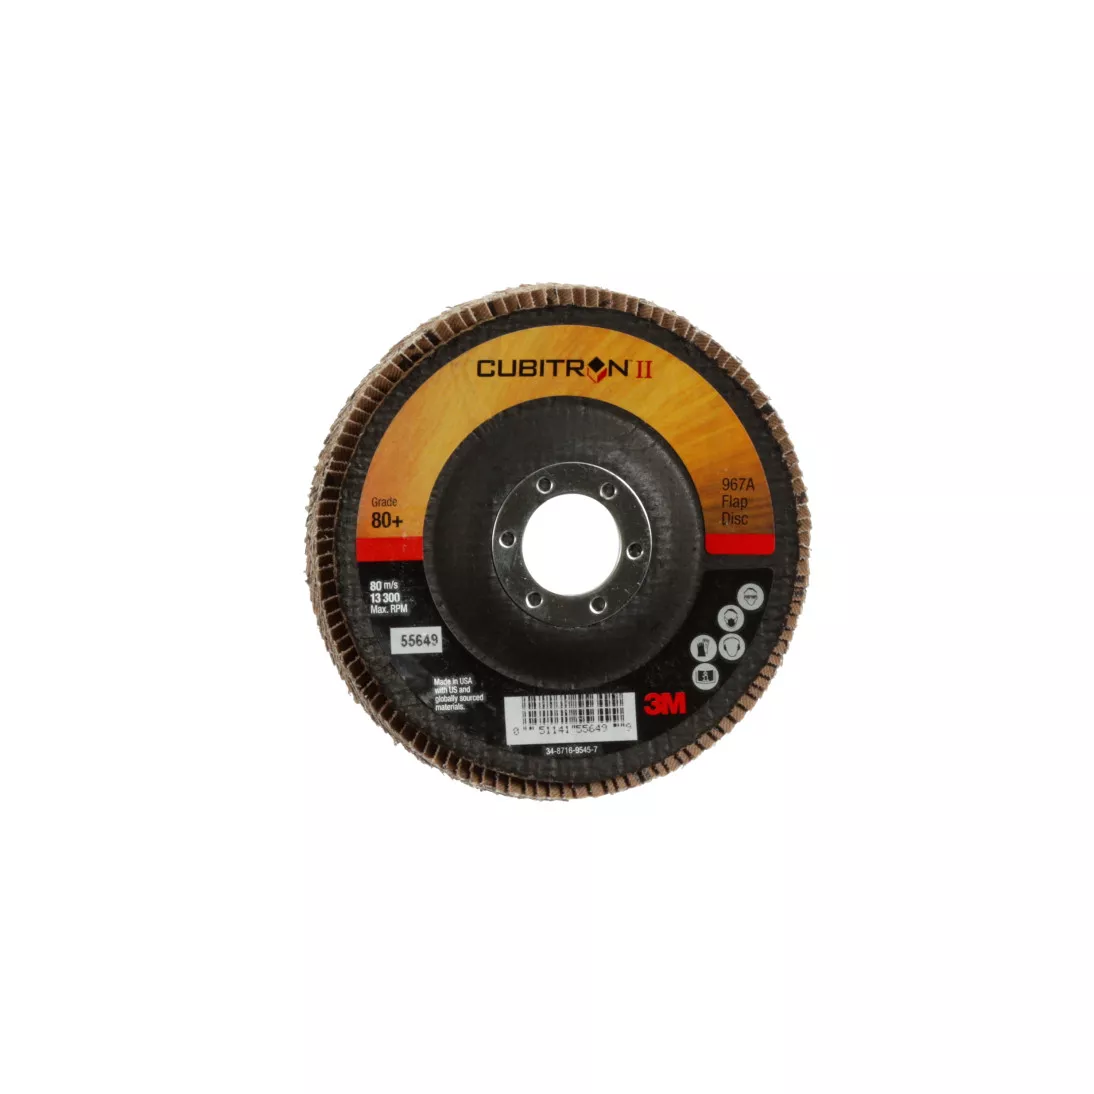 3M™ Cubitron™ II Flap Disc 967A, 80+, T29, 4-1/2 in x 7/8 in, Giant, 10
ea/Case